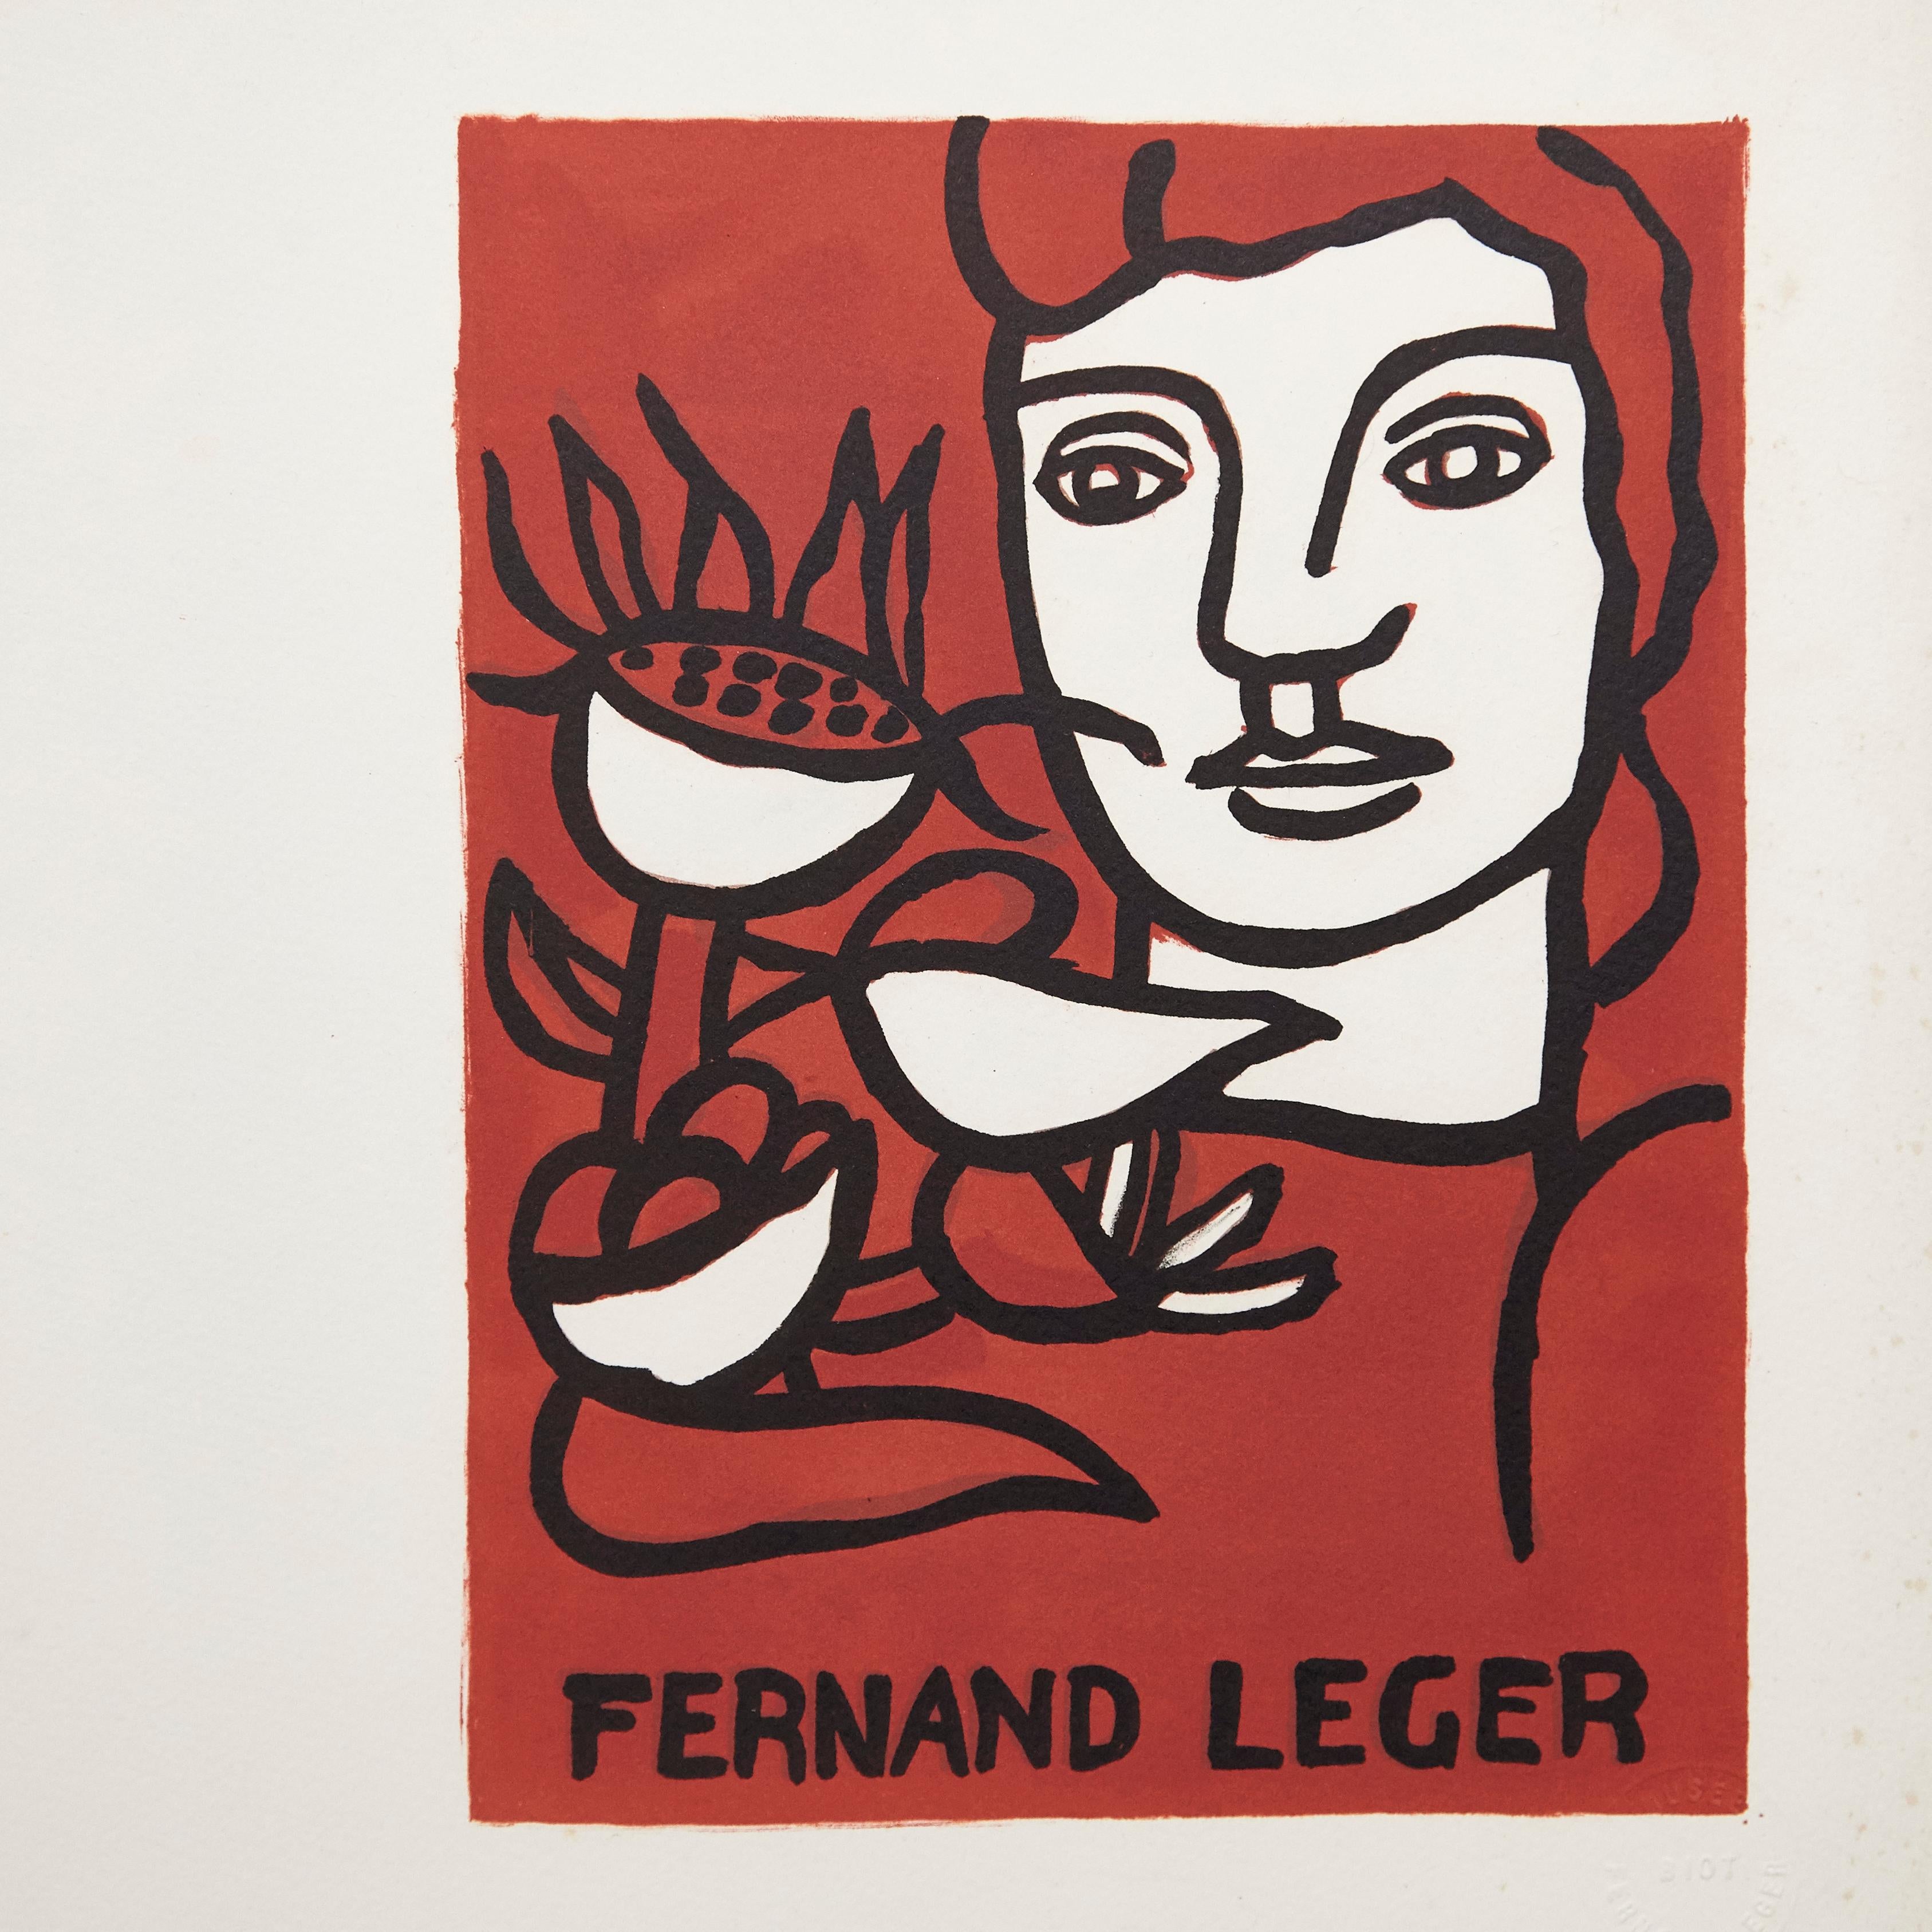 Lithographie Fernand Léger et poème André Verdet réalisés en France en 1980

Numéroté et signé par André Verdet
édition limitée à 150 exemplaires.

 